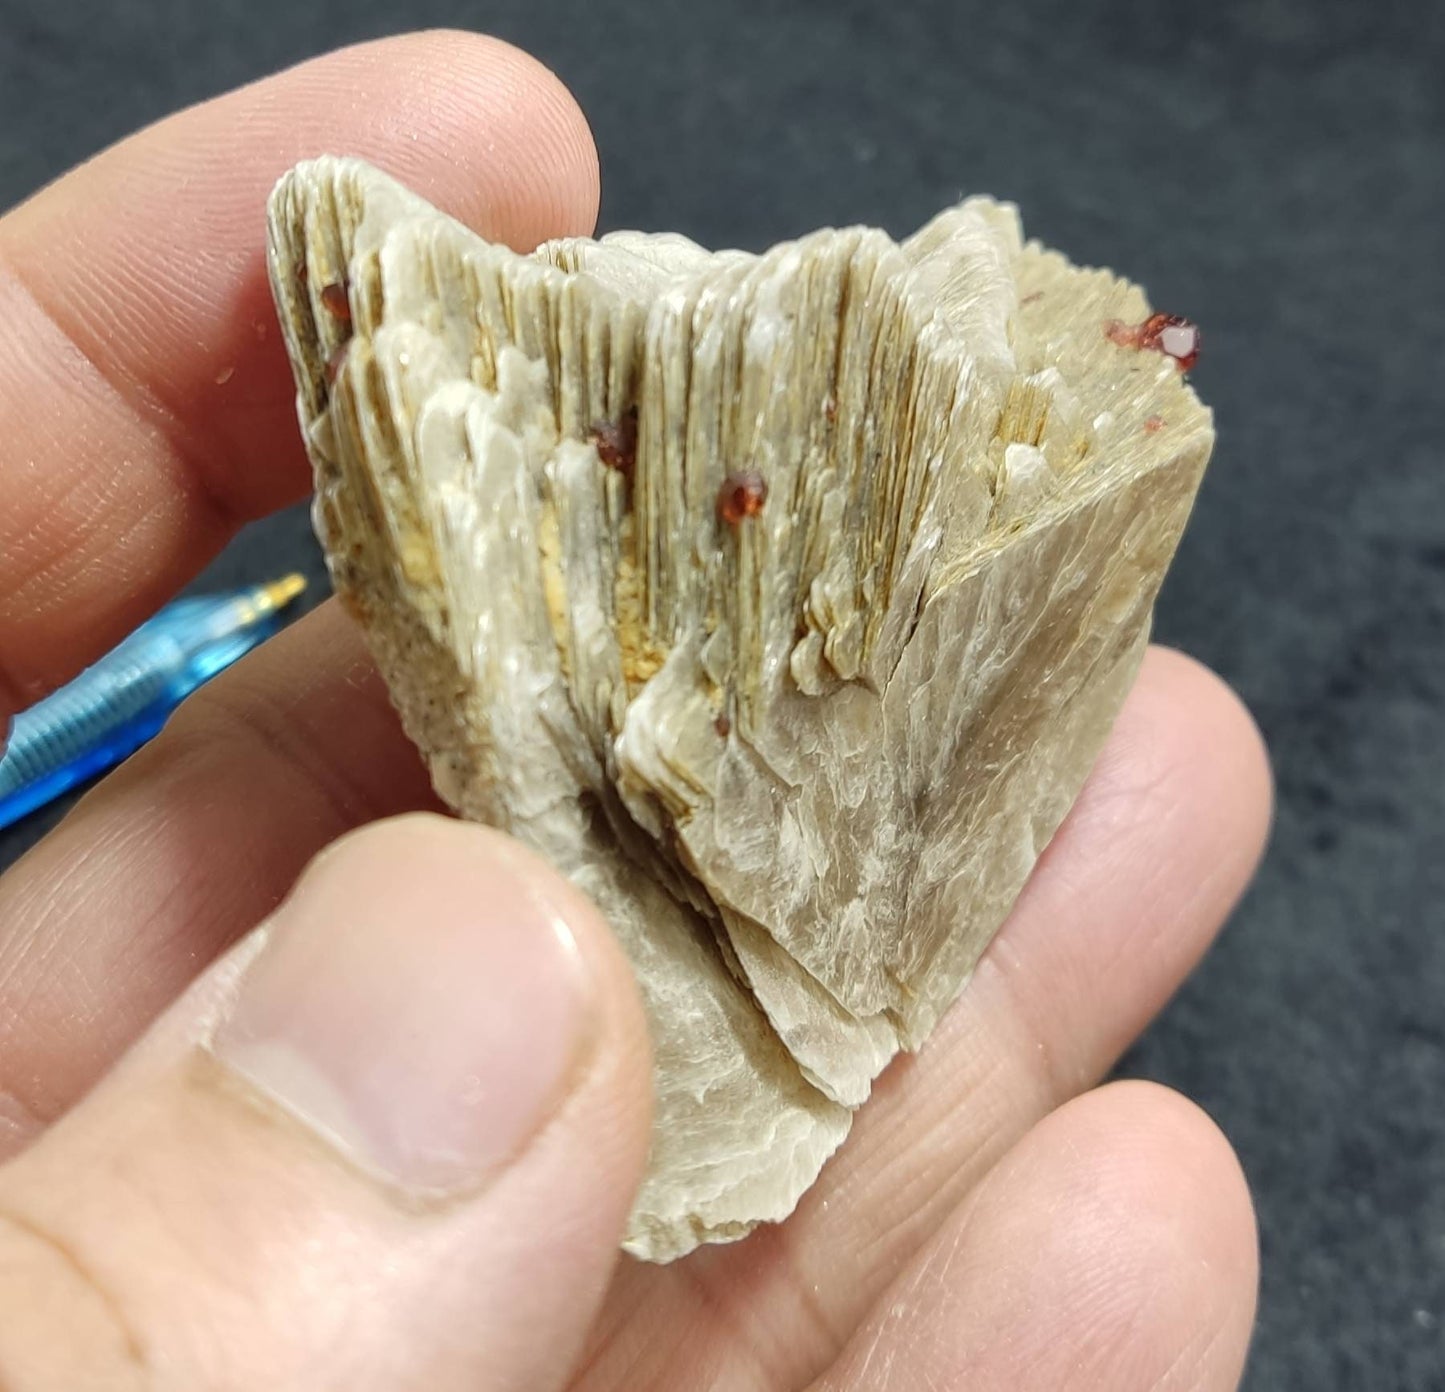 An amazing aesthetic specimen of spessartine garnet embedded in muscovite 56 grams